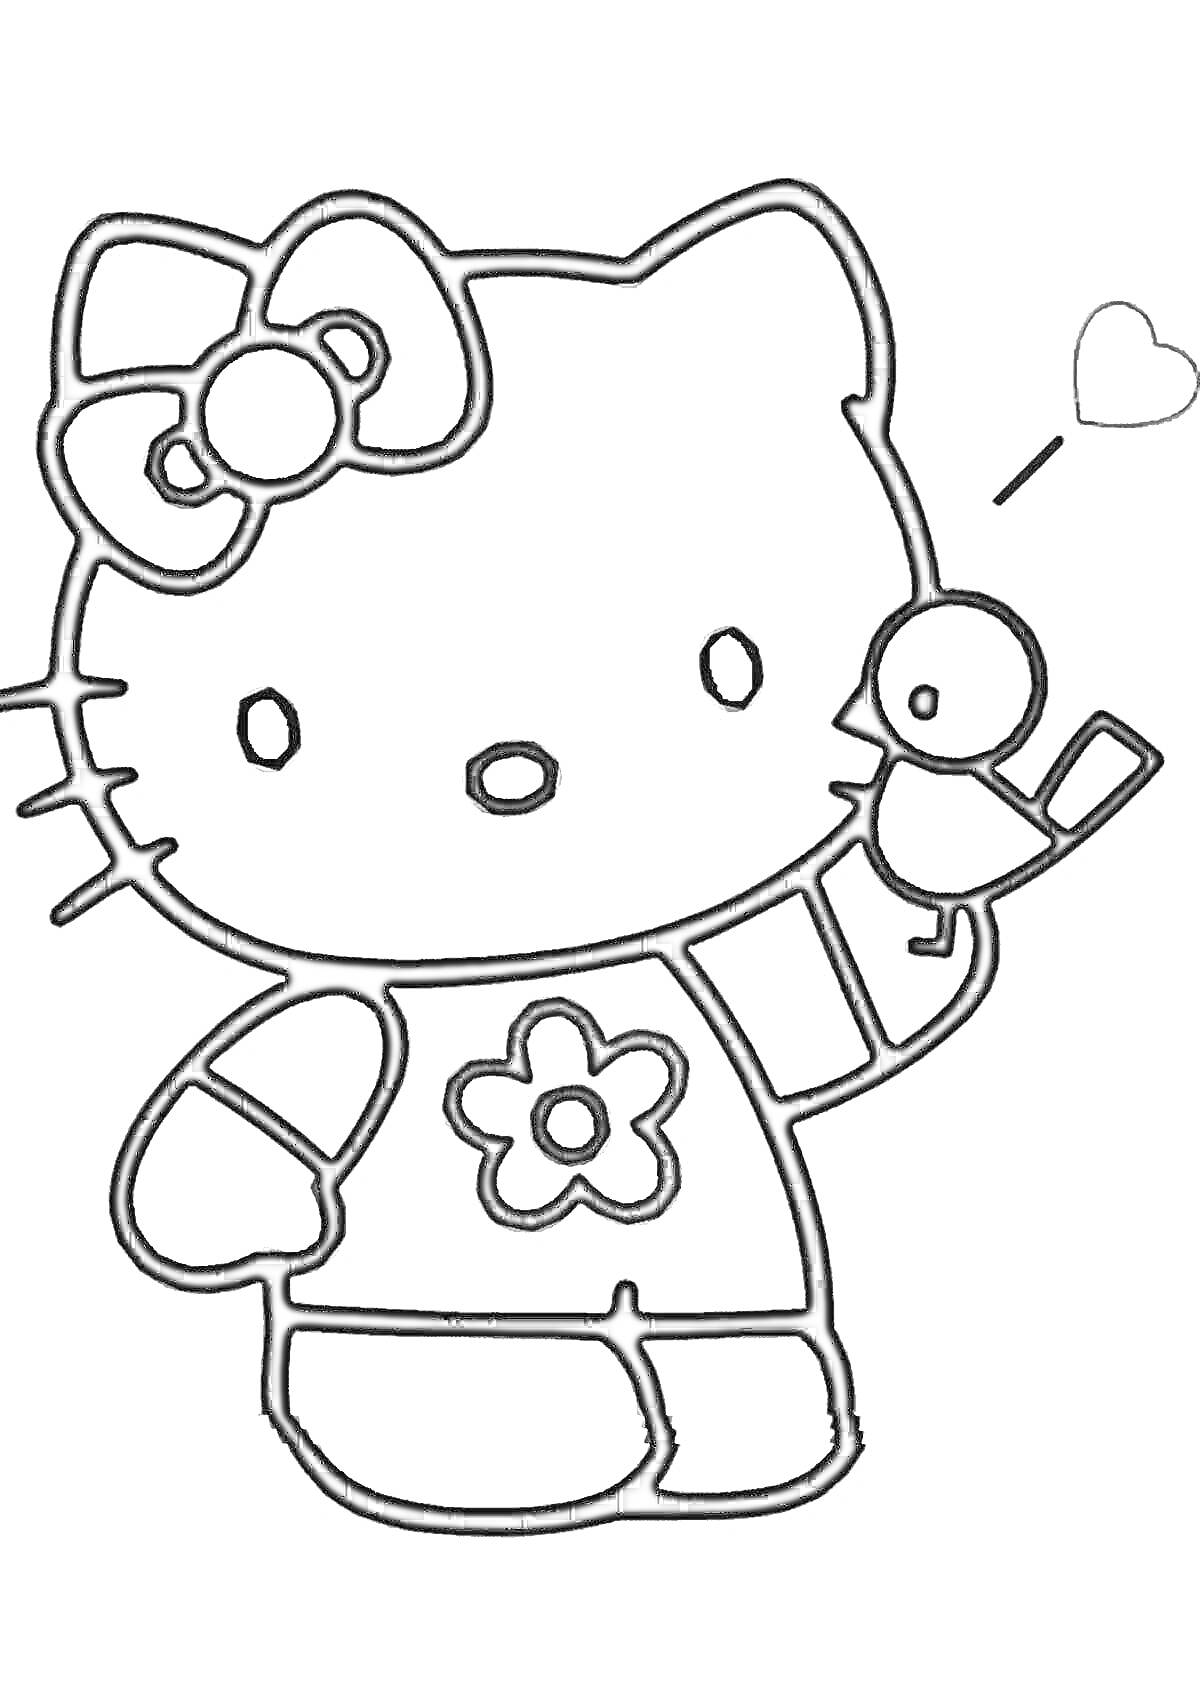 Раскраска Хелло Китти с бантом, в футболке с цветком, держащая птичку и сердечко